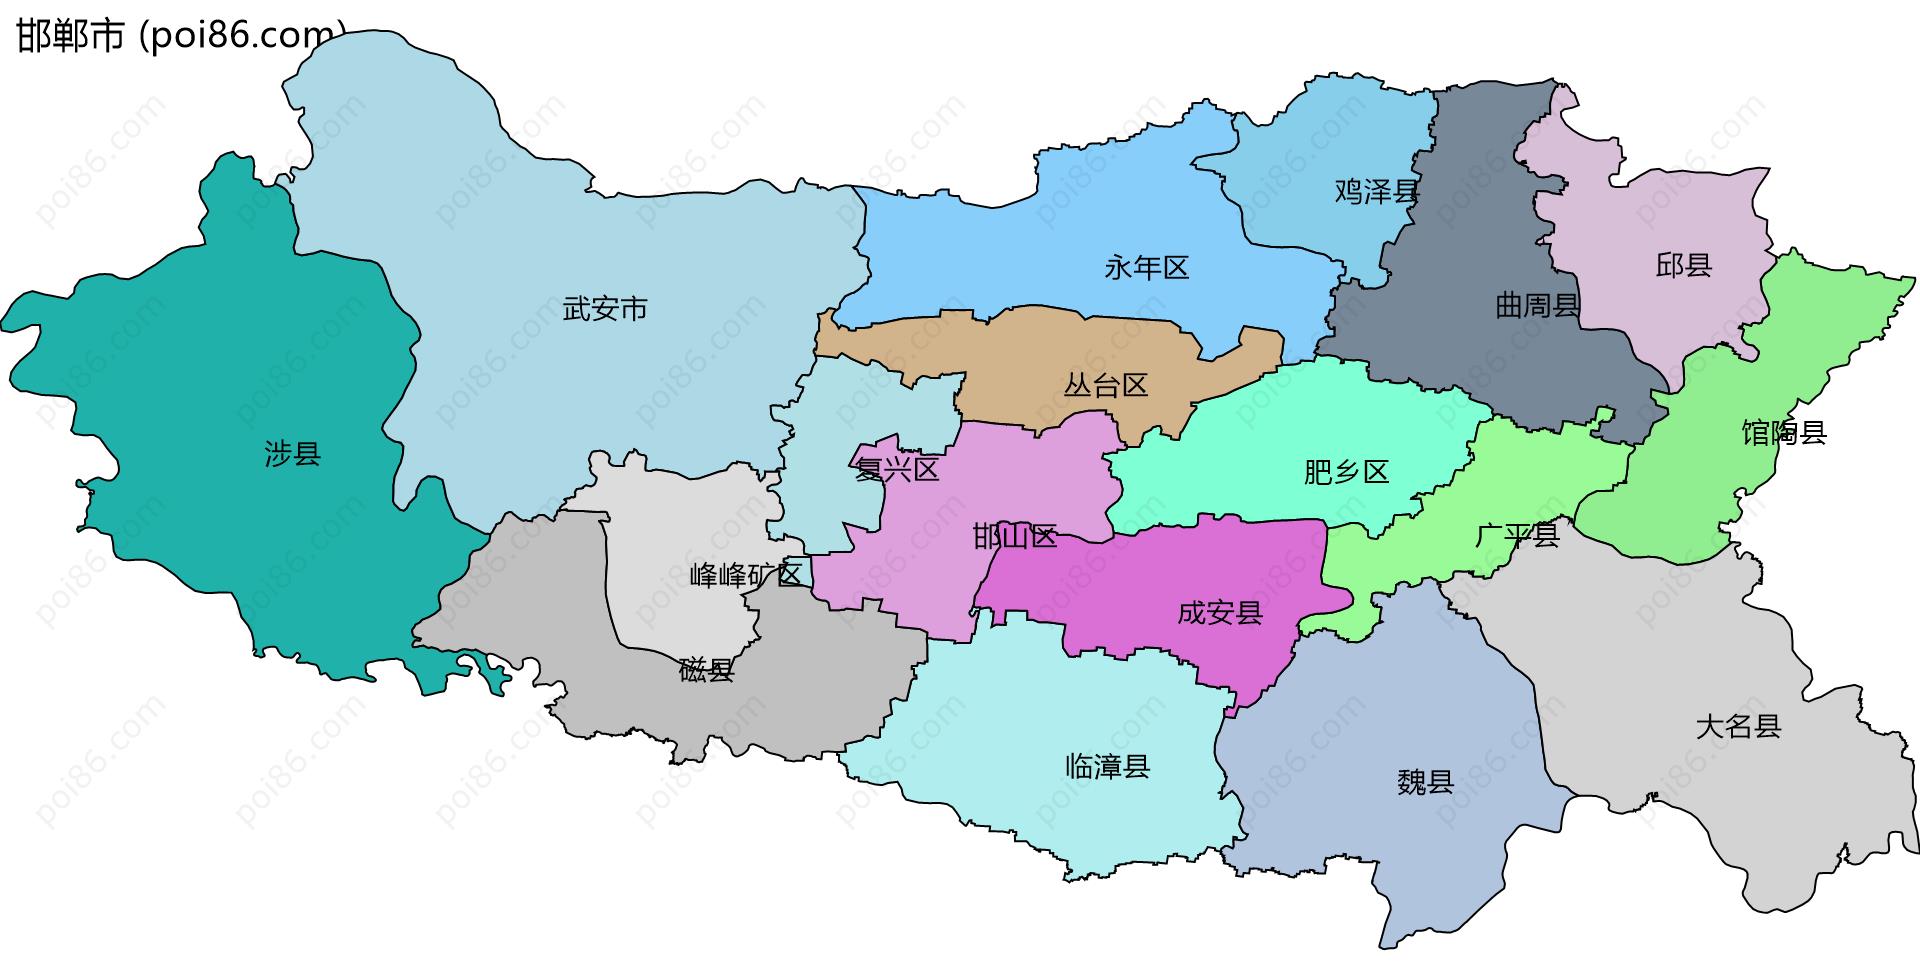 邯郸市边界地图